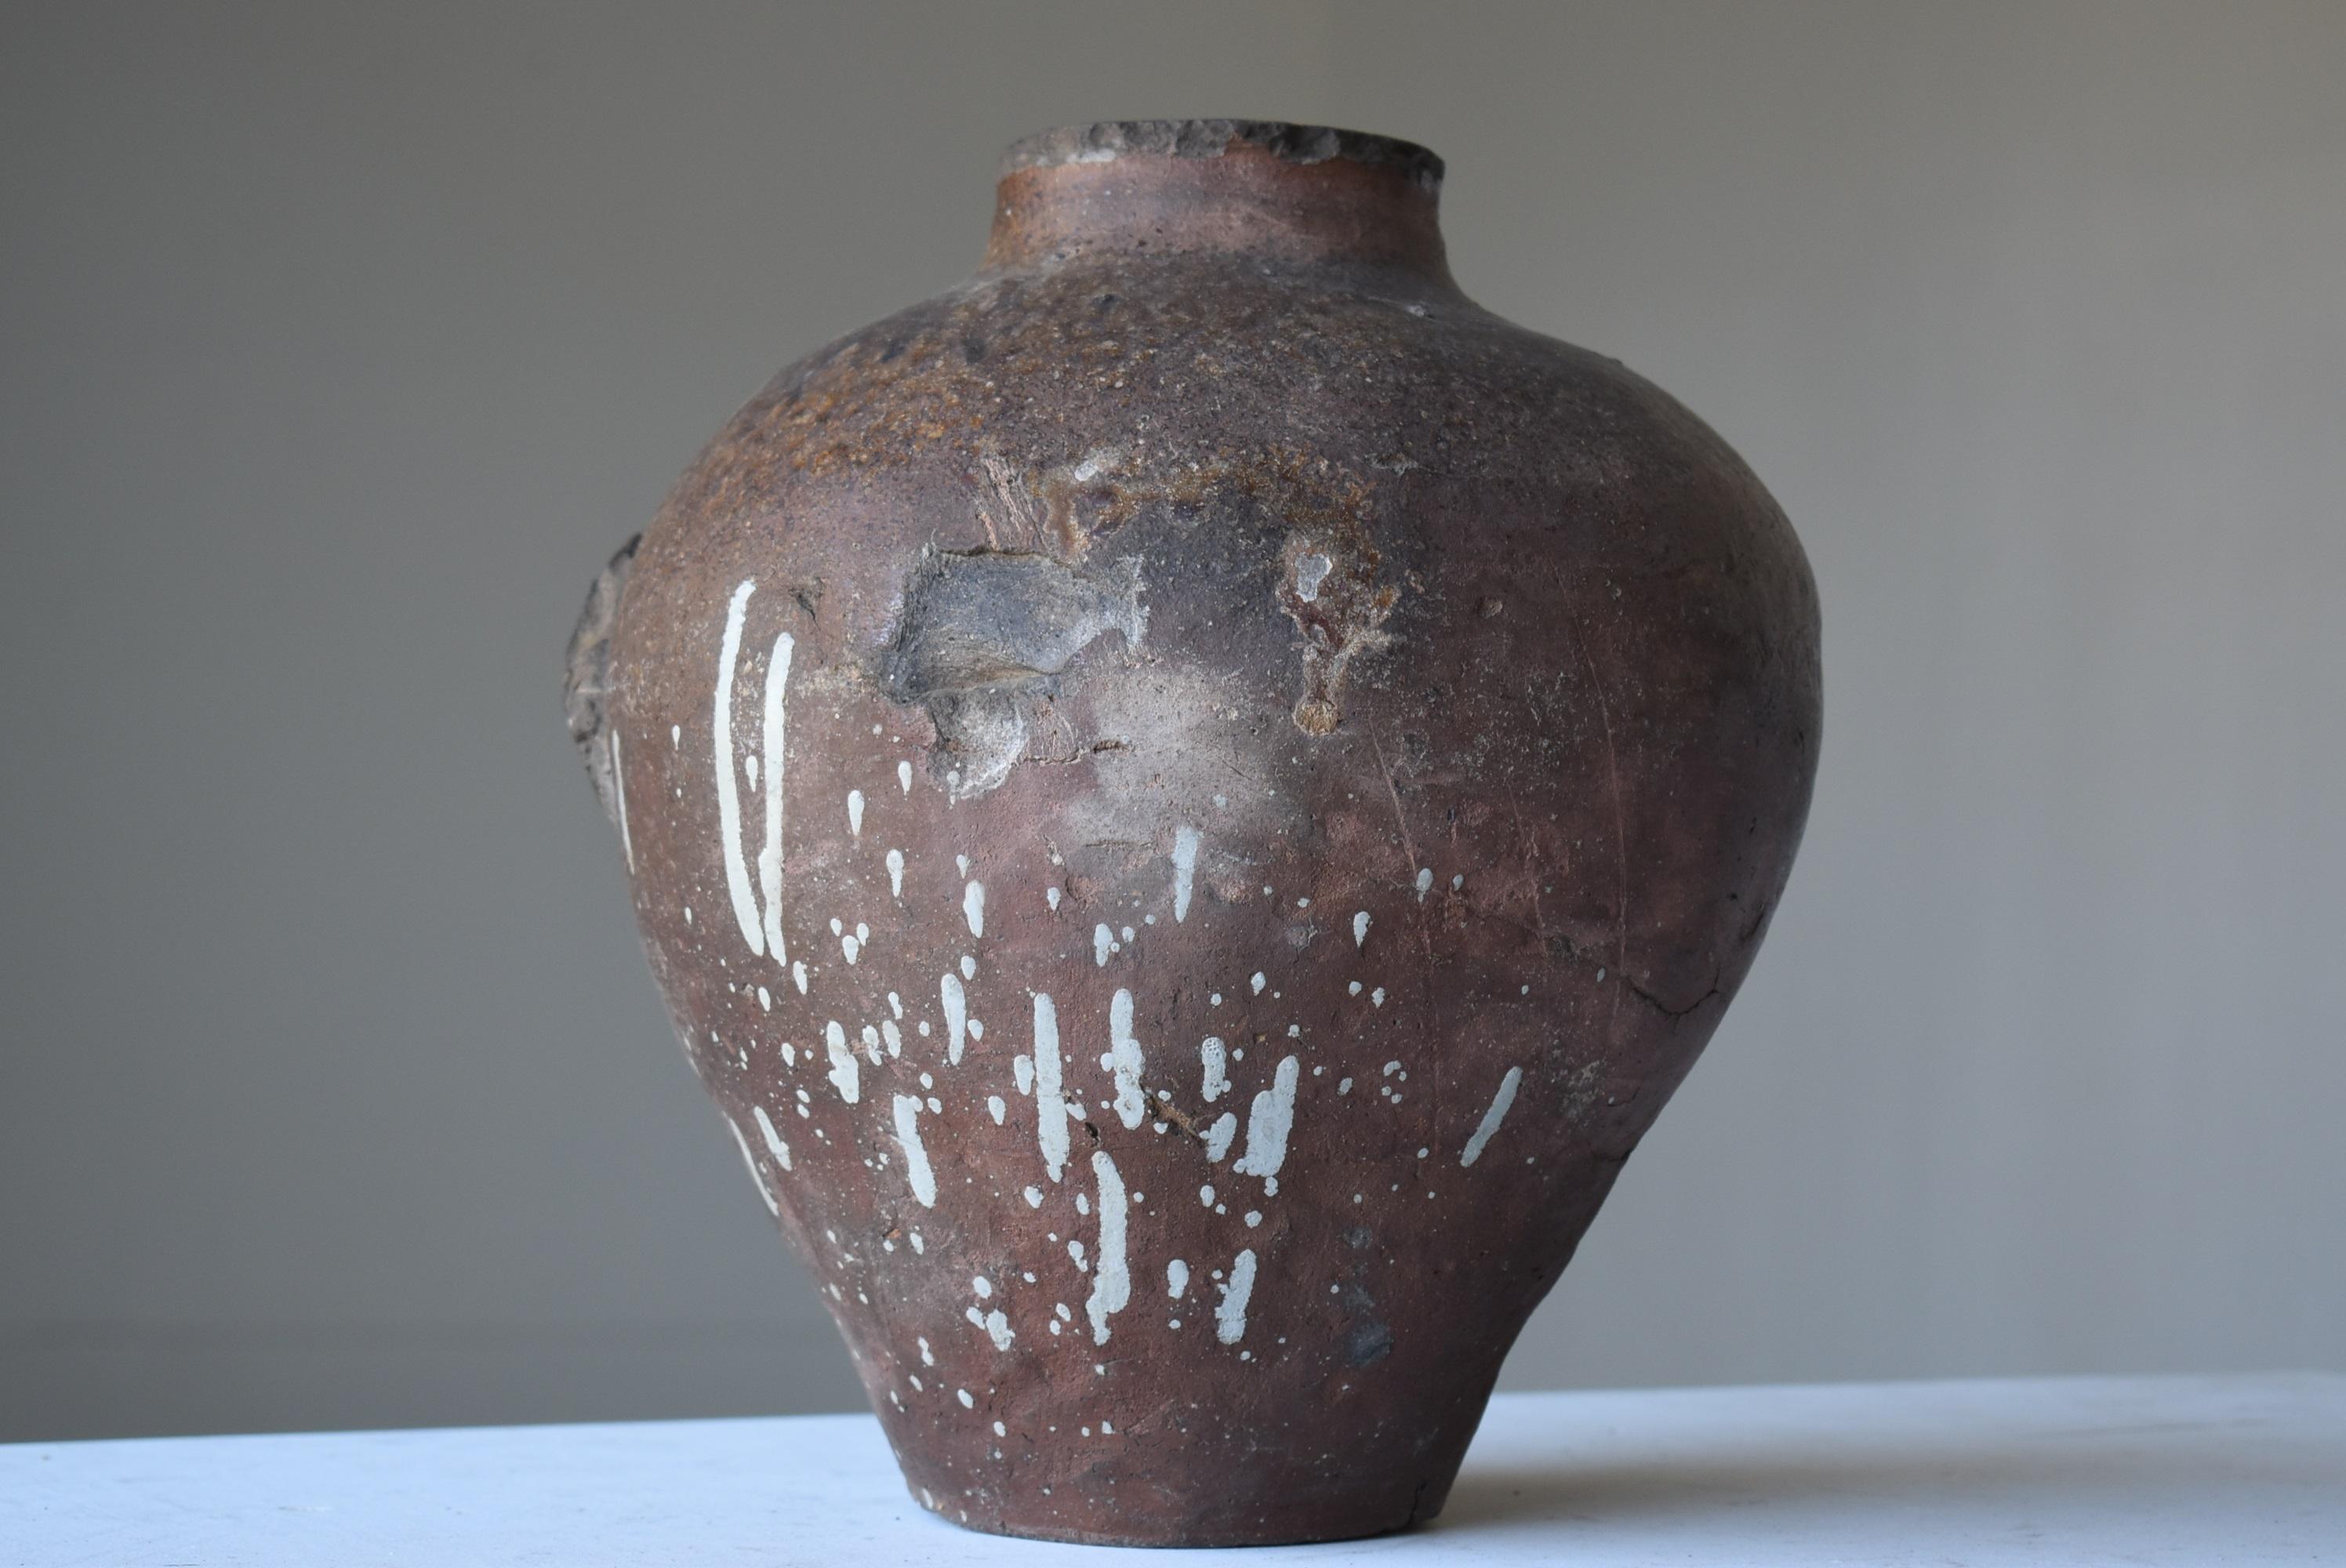 Japanese Old Pottery 1700s-1800s/Antique Flower Vase Vessel Jar Tsubo Wabisabi 1